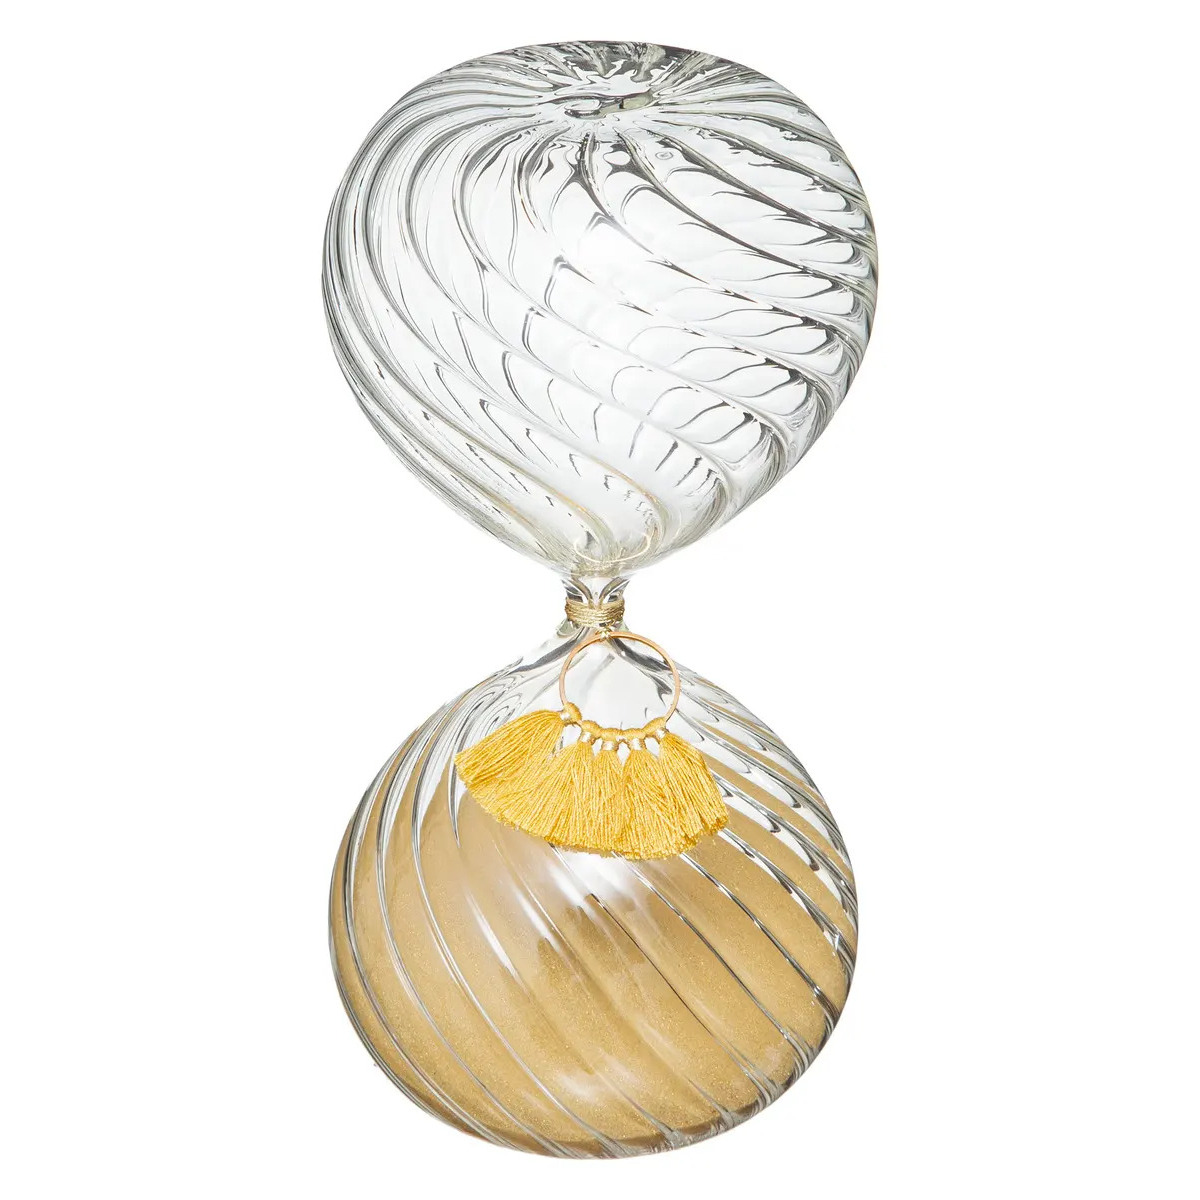 Atmosphera Zandloper cilinder - decoratie of tijdsmeting - 20 minuten geel zand - H18 cm - glas -